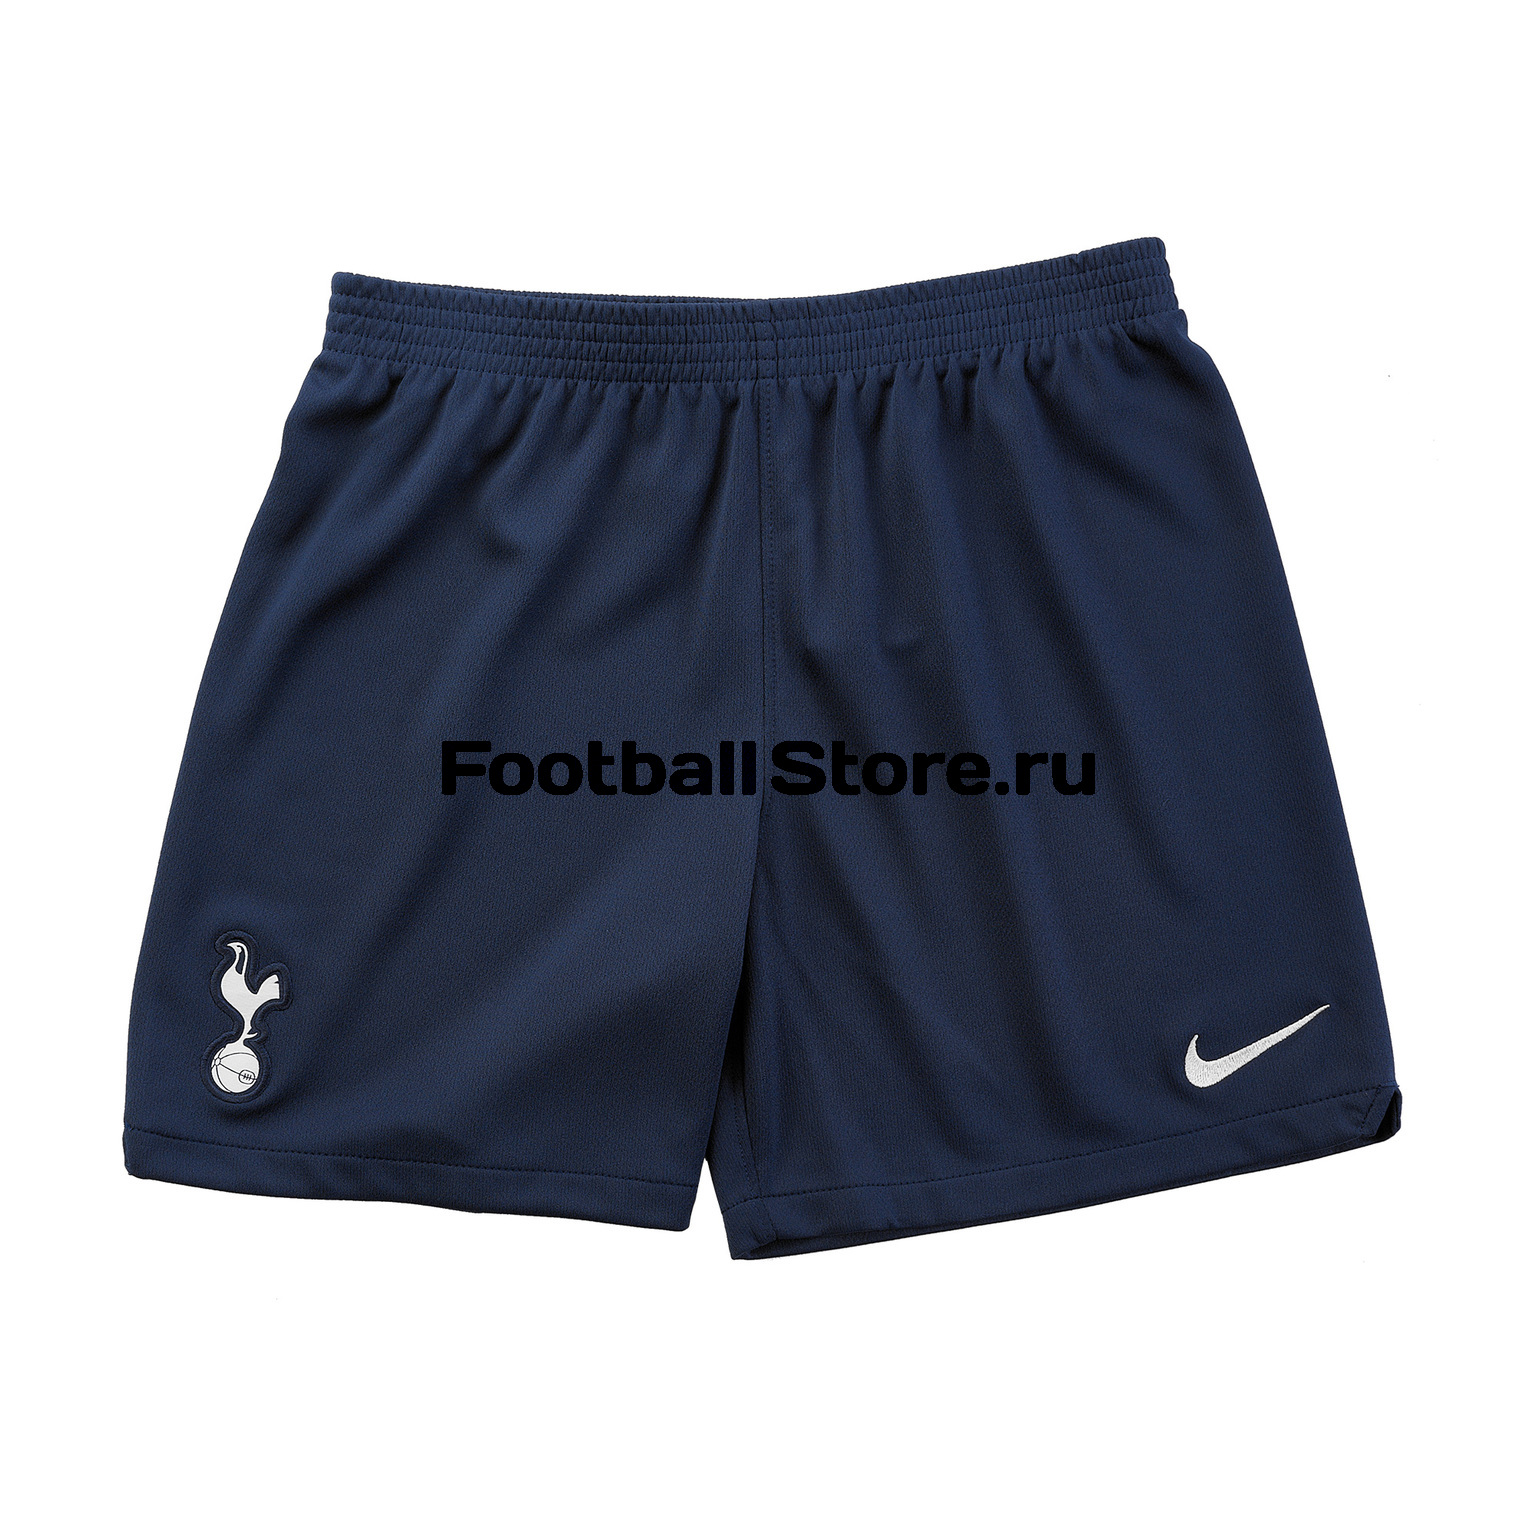 Комплект детской формы Nike Tottenham 2019/20